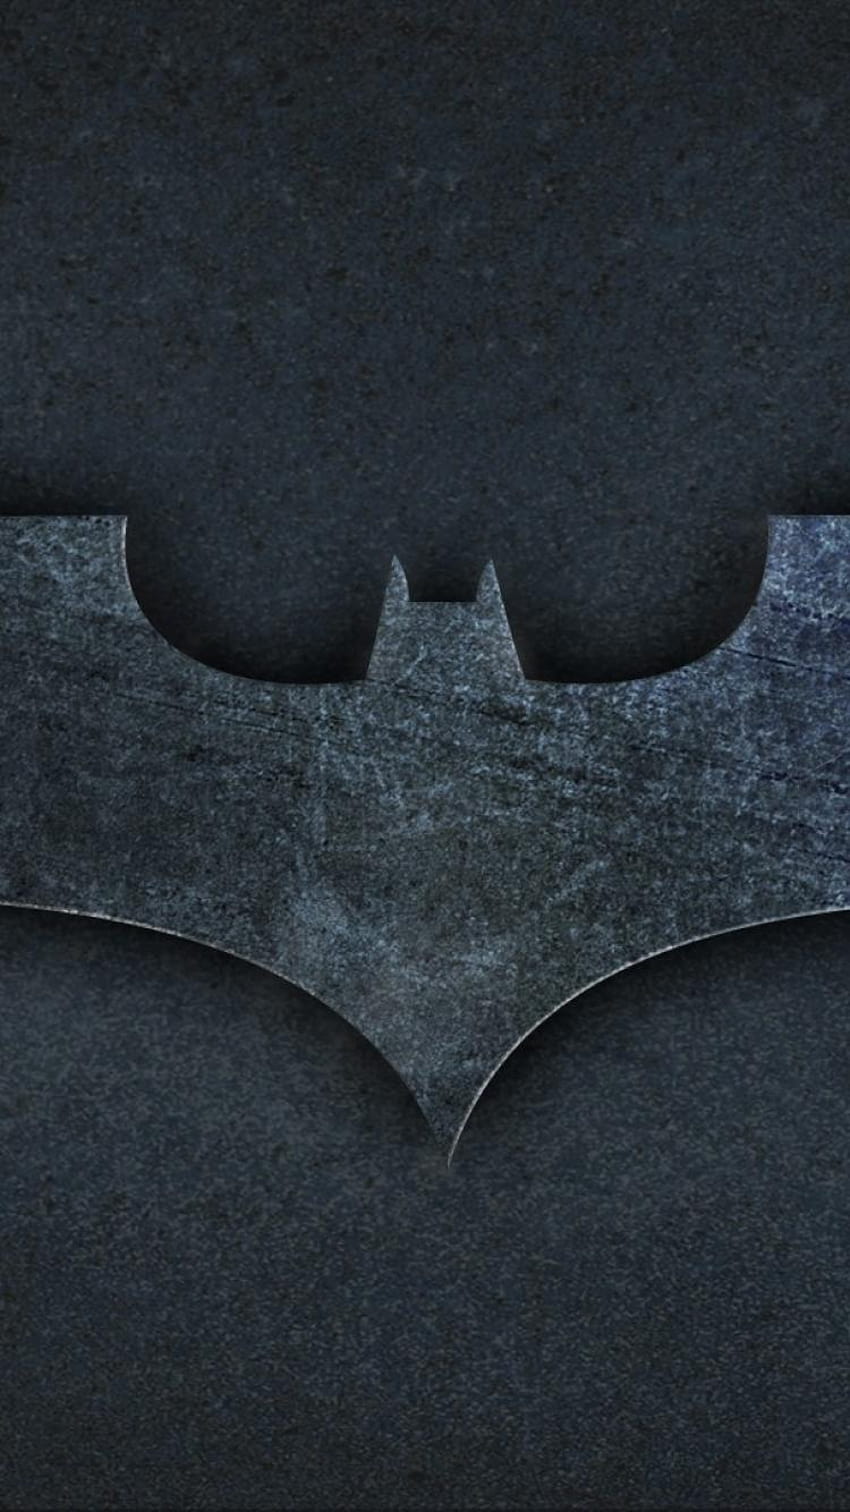 Batman logo mobile HD phone wallpaper | Pxfuel